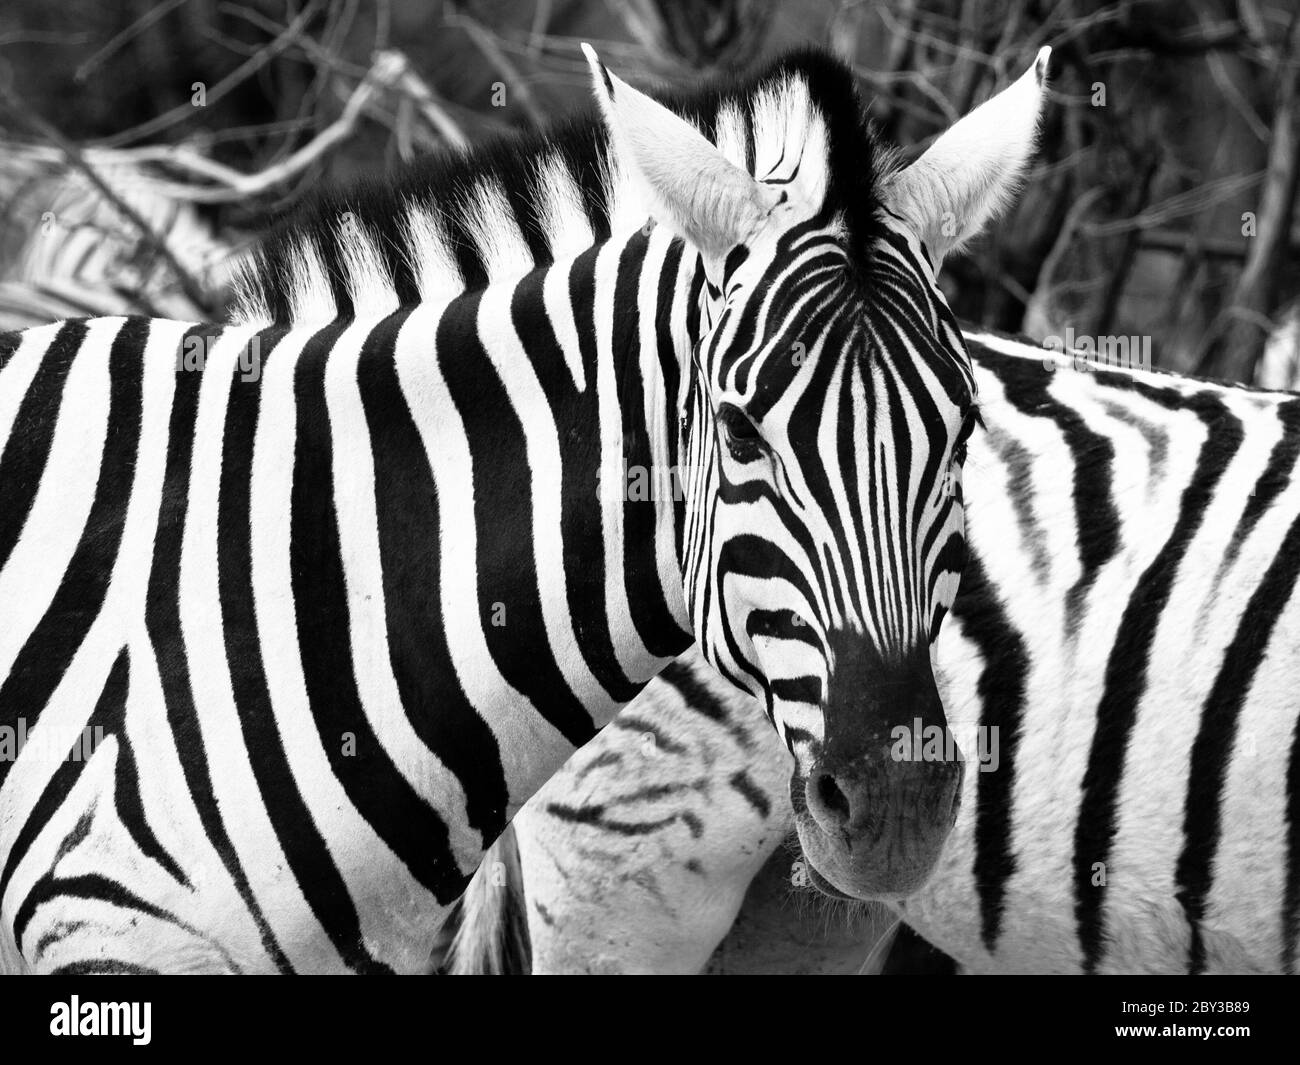 Prifile close-up shot of wild zebra in black and white, Etosha National Park, Namibia, Africa. Stock Photo